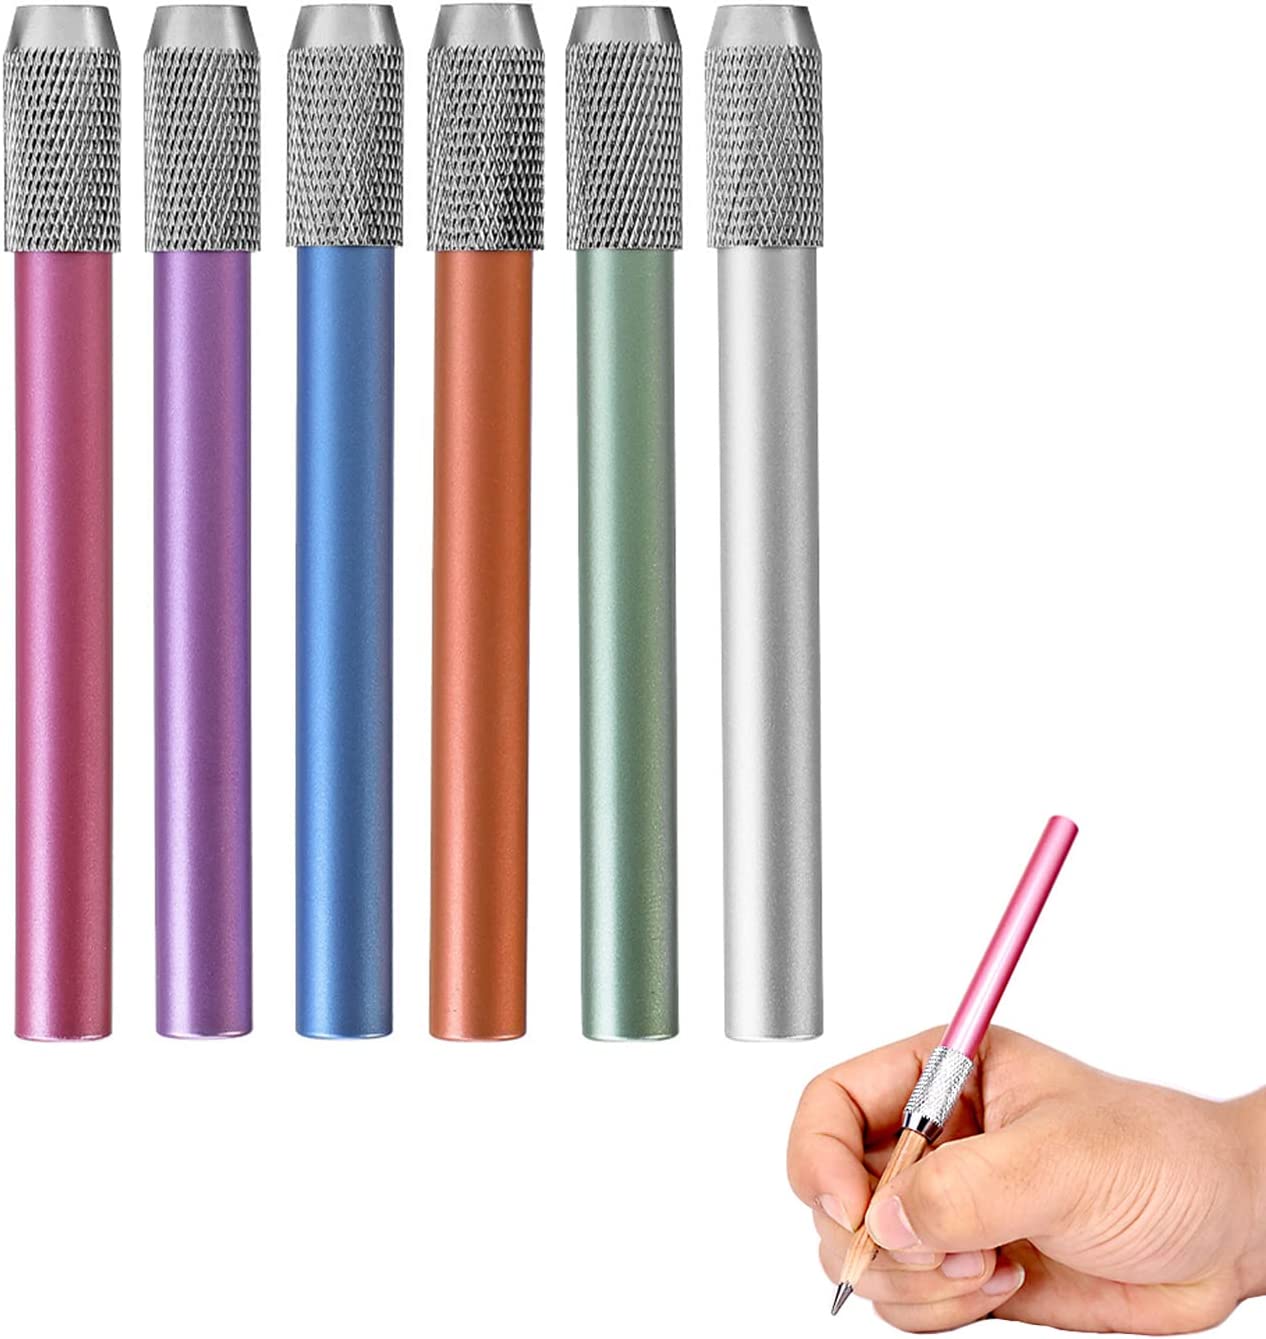 6本セット鉛筆延長ホルダー 鉛筆補助軸 鉛筆エクステンダー 延長用 鉛筆キャップ 校 子供 筆記用具 美術生 デッサン用具 6色 